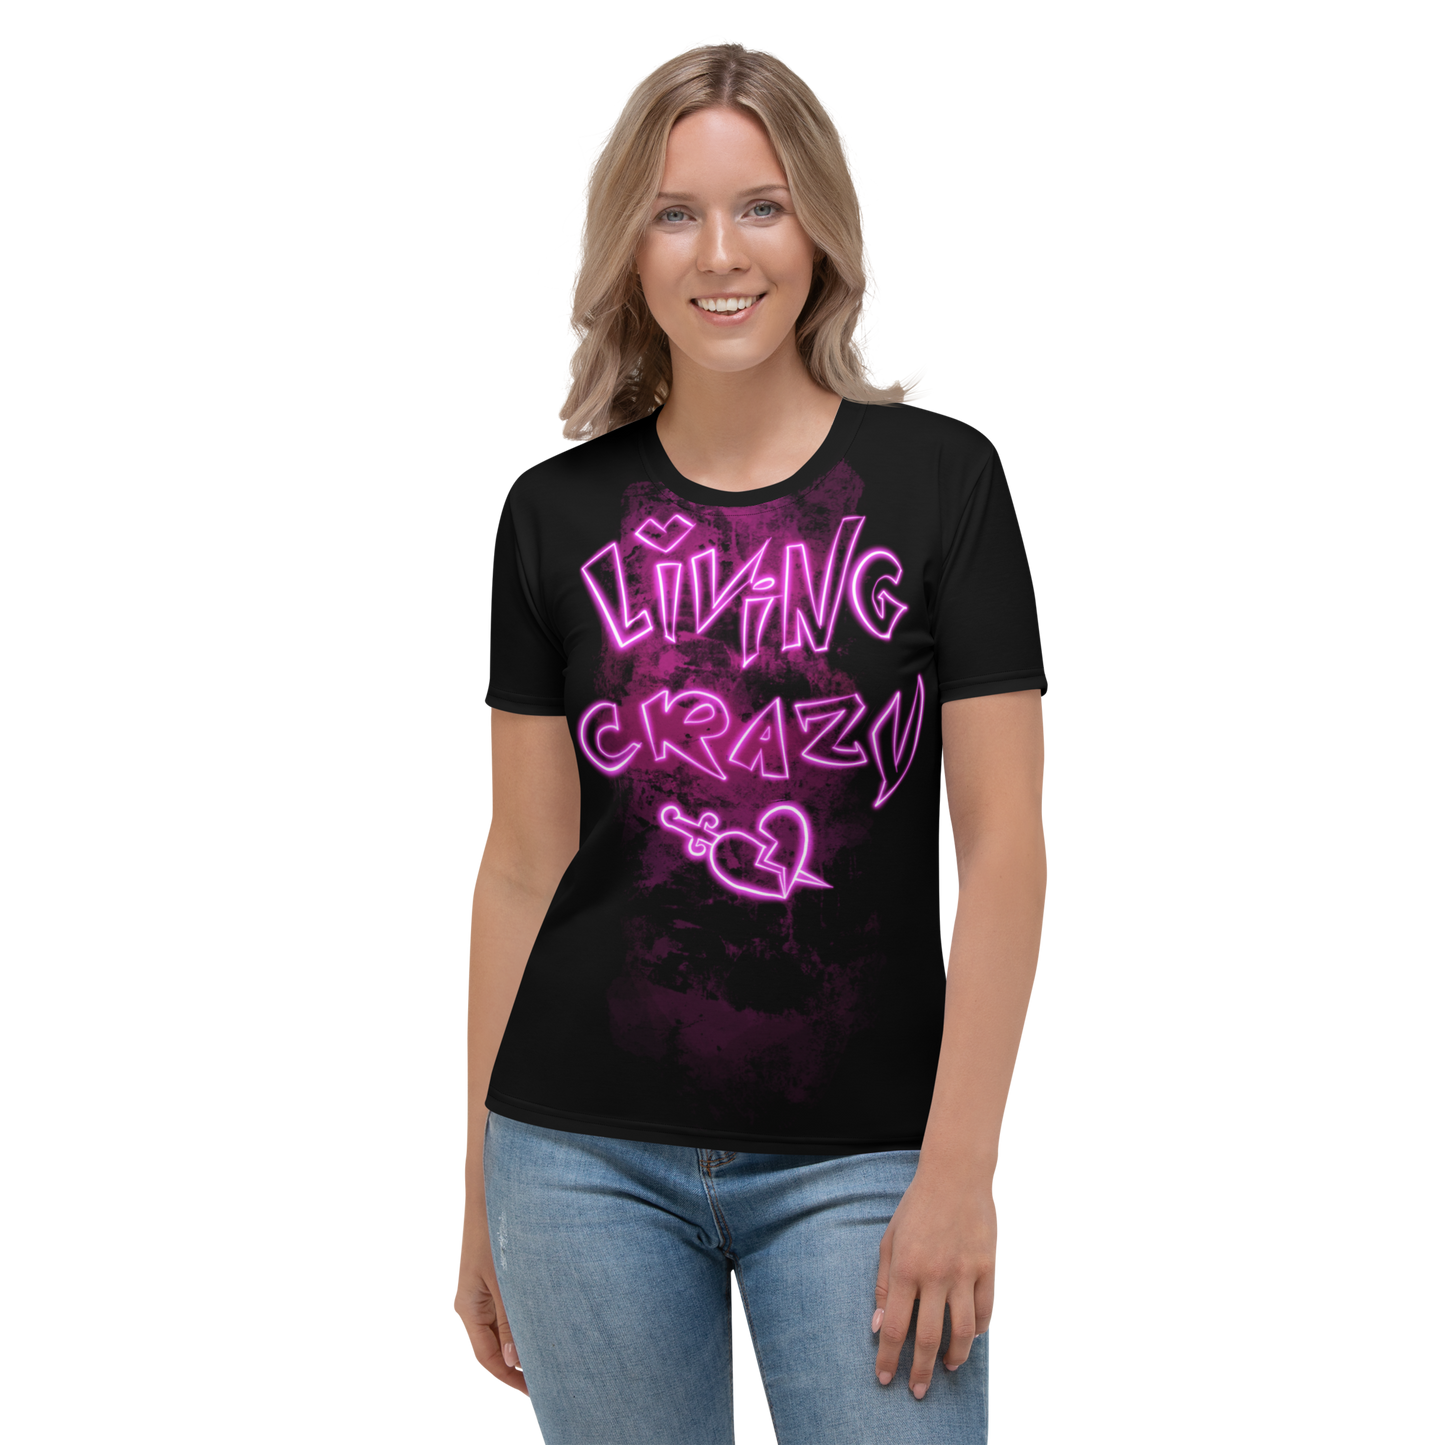 Queen of Crazy - Women's T-shirt